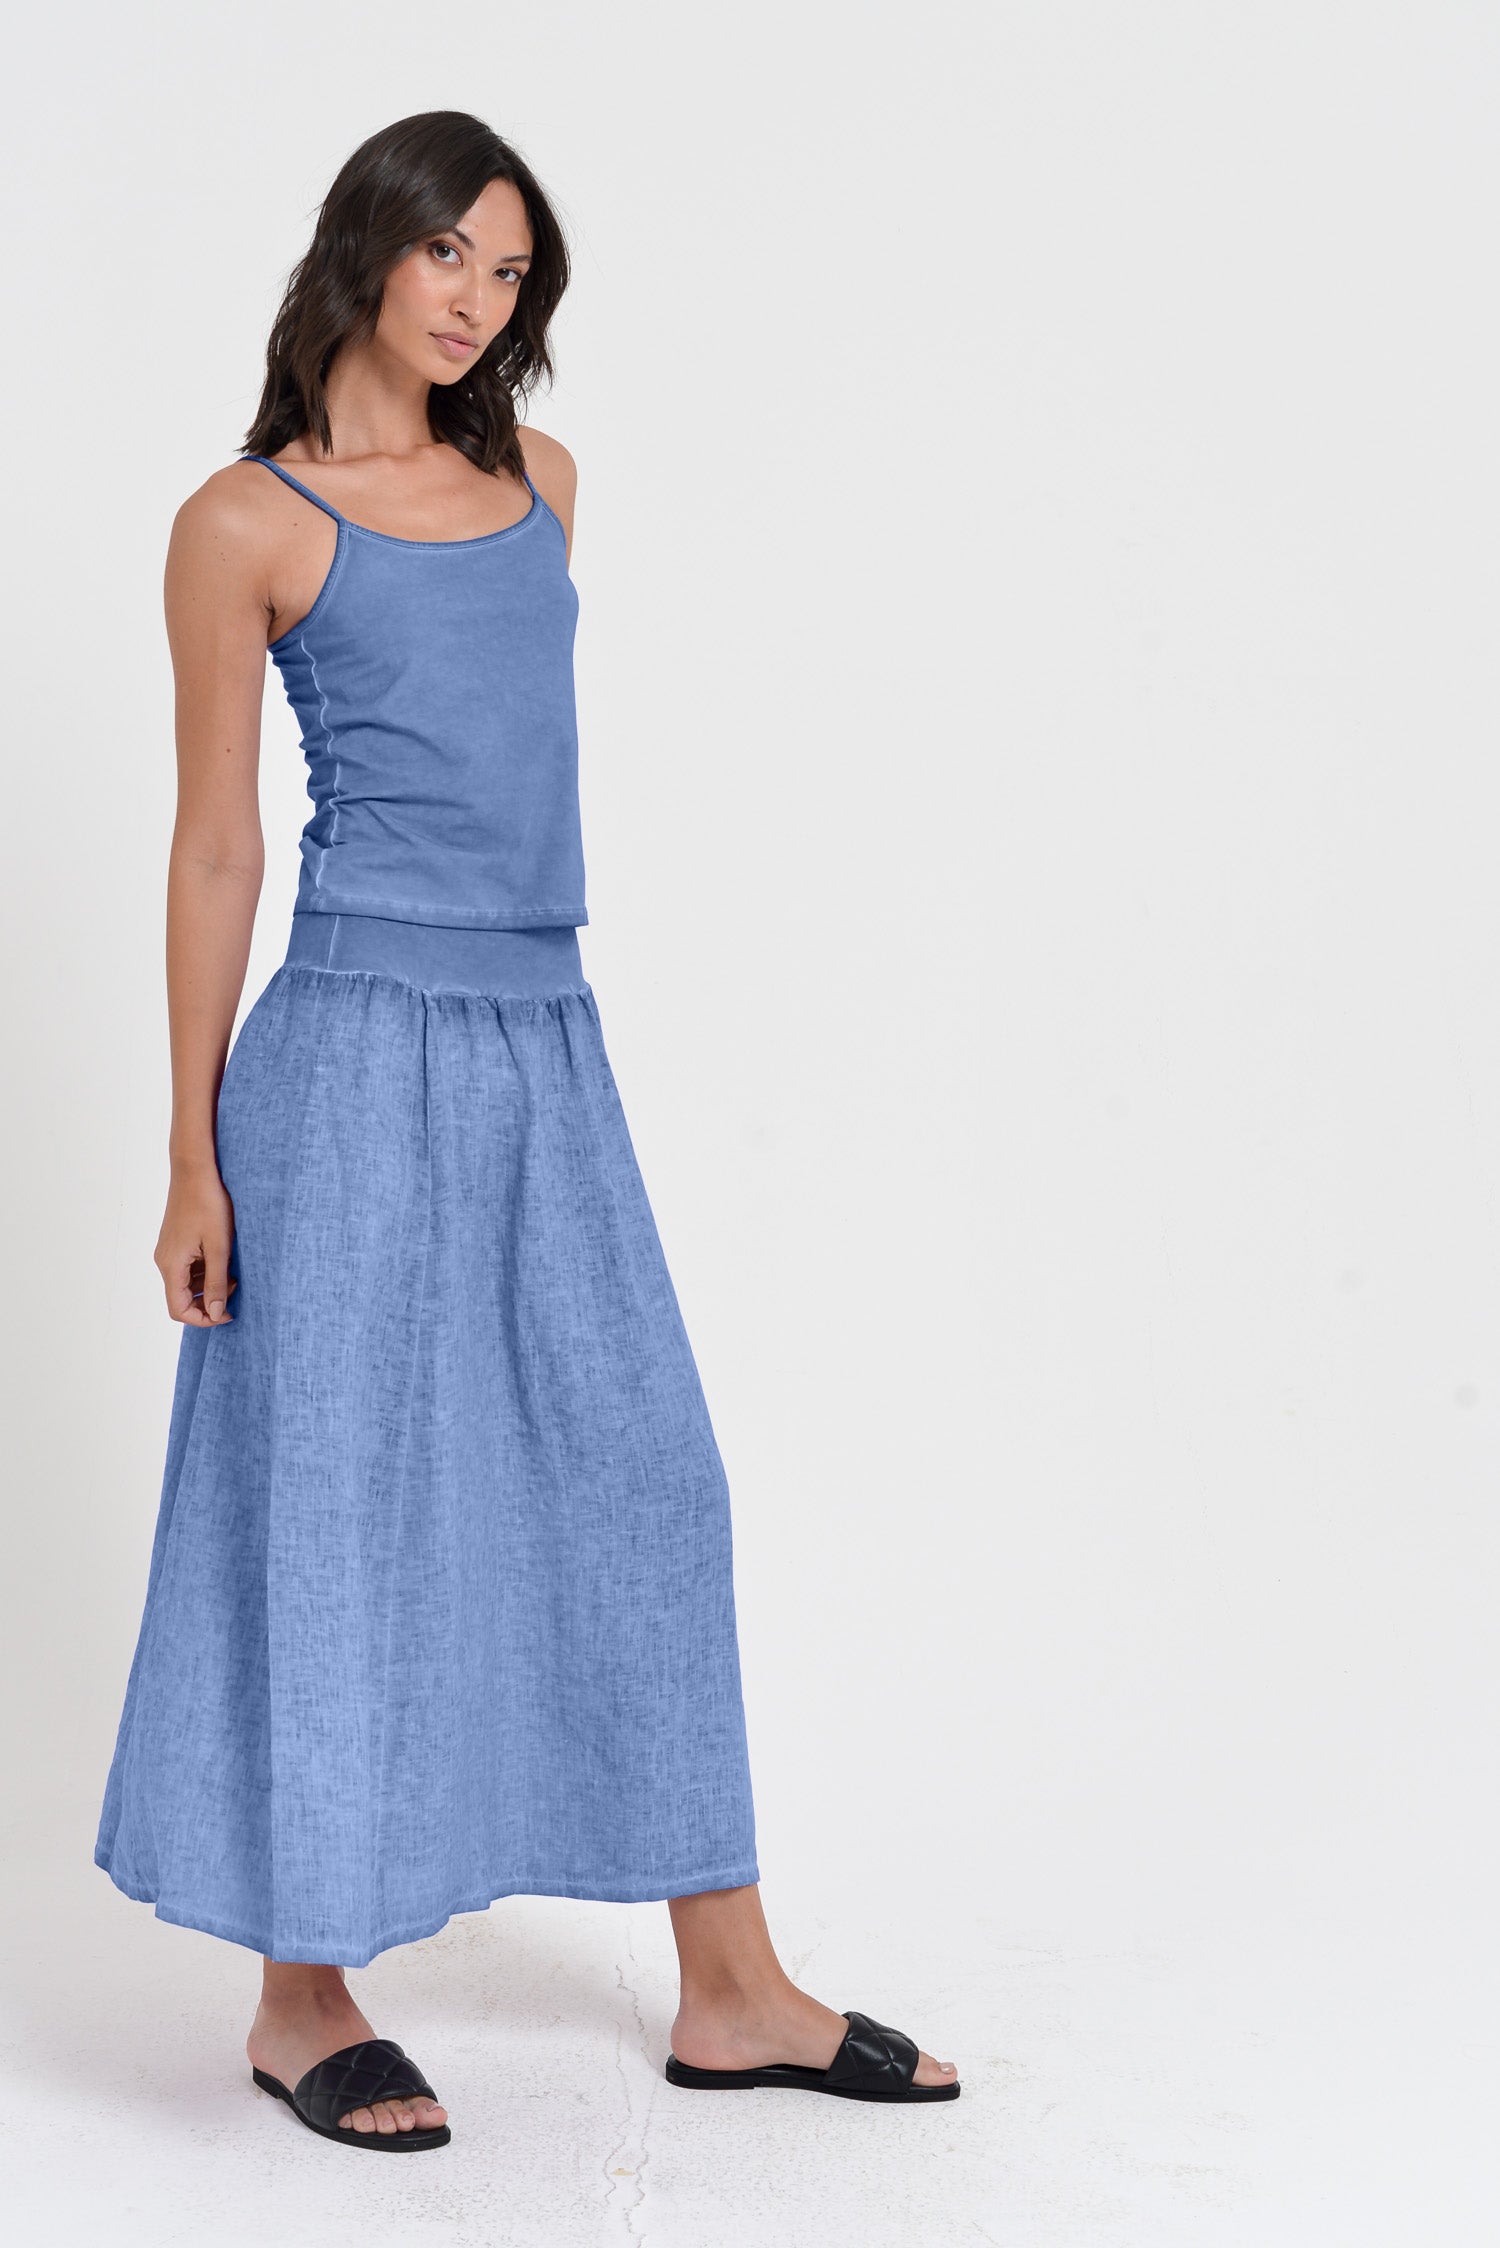 Maxime Skirt - Women's Breezy Linen Skirt - Bay